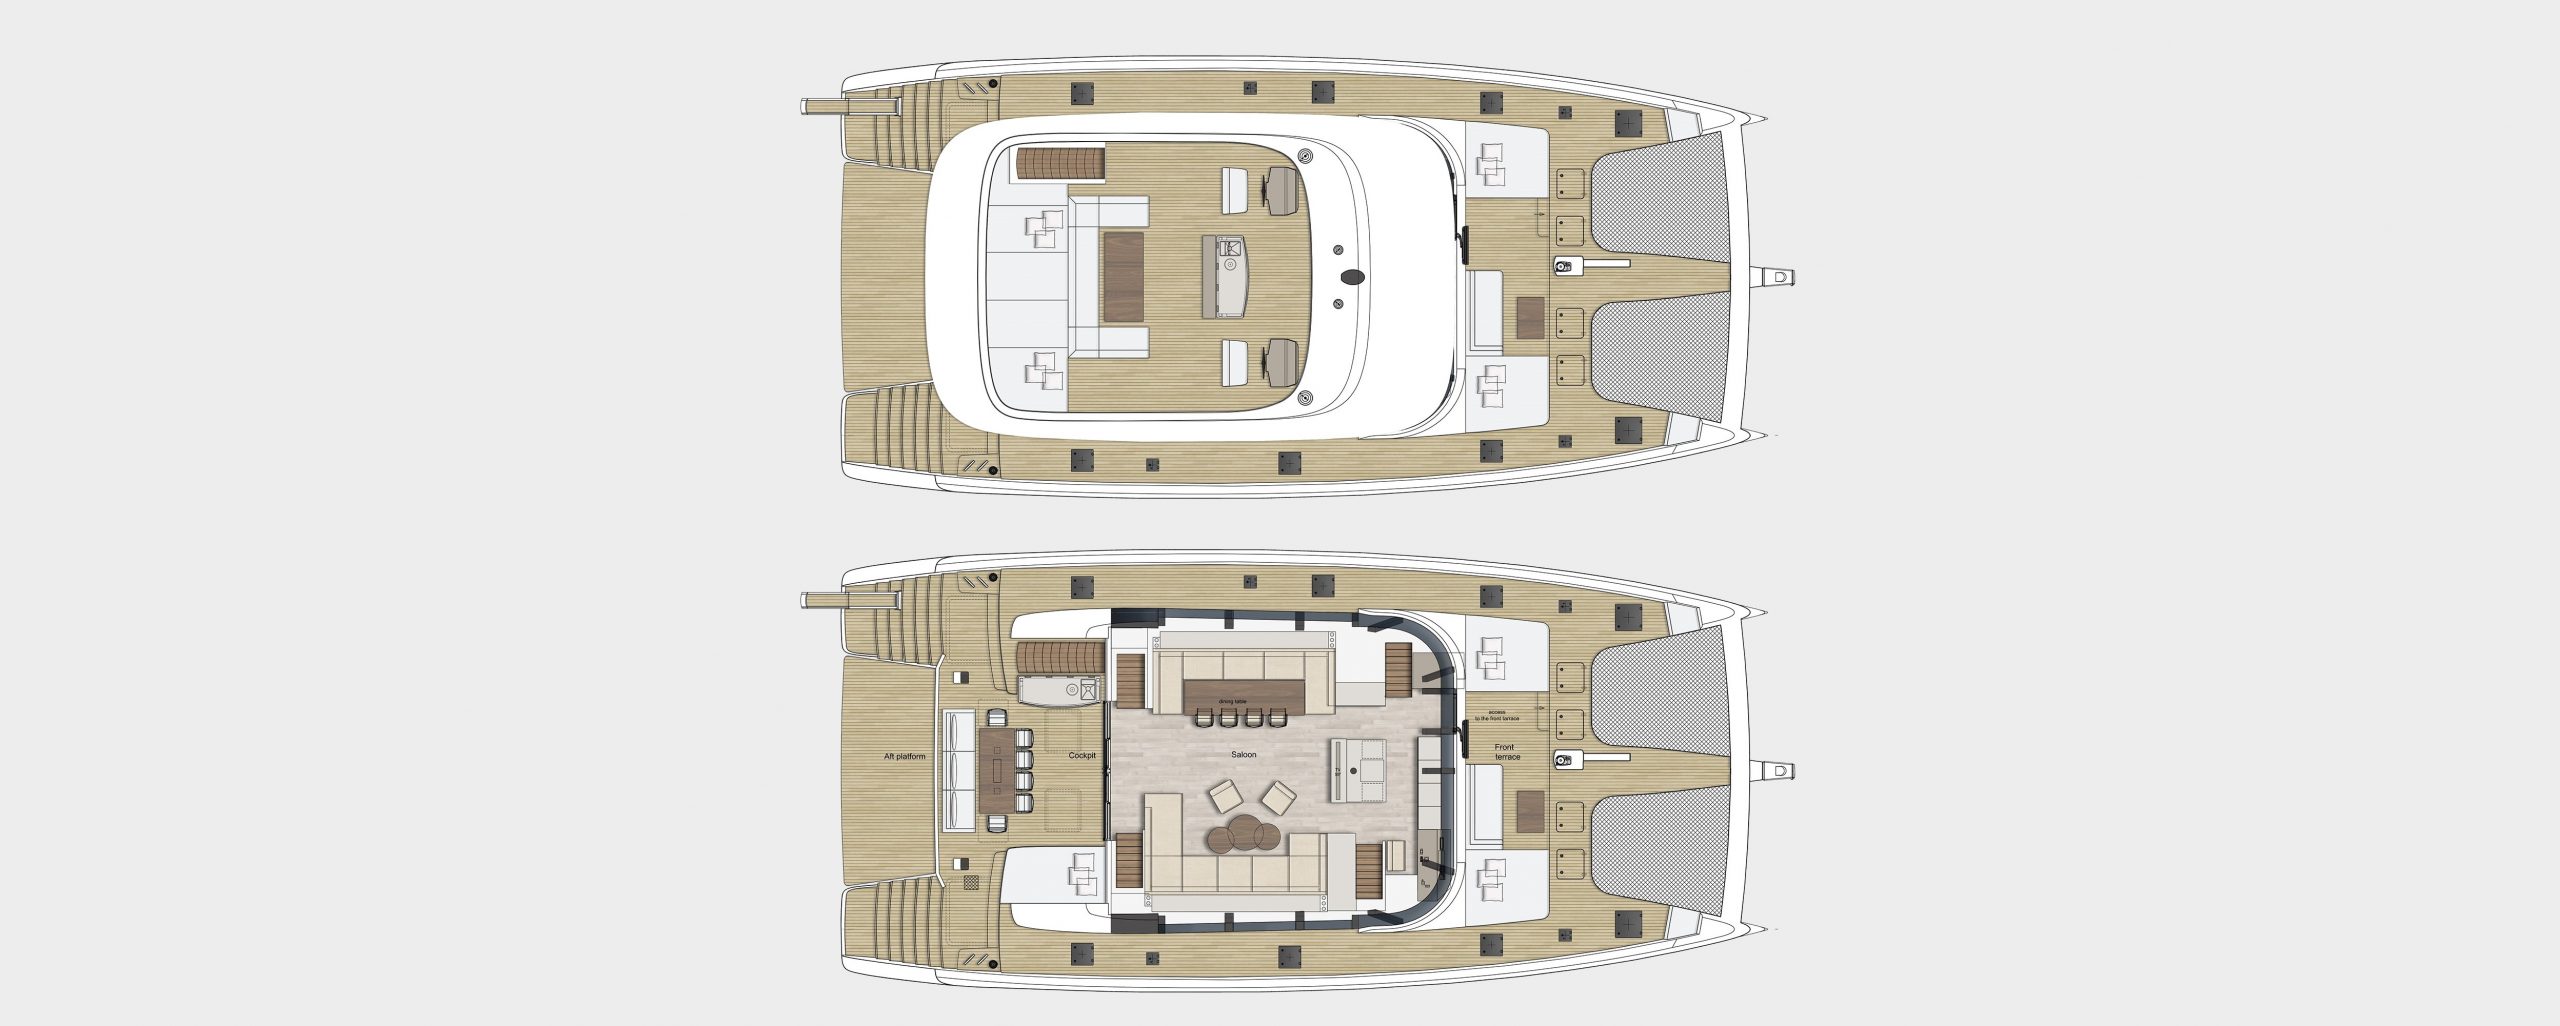 7x catamaran yacht charter layout